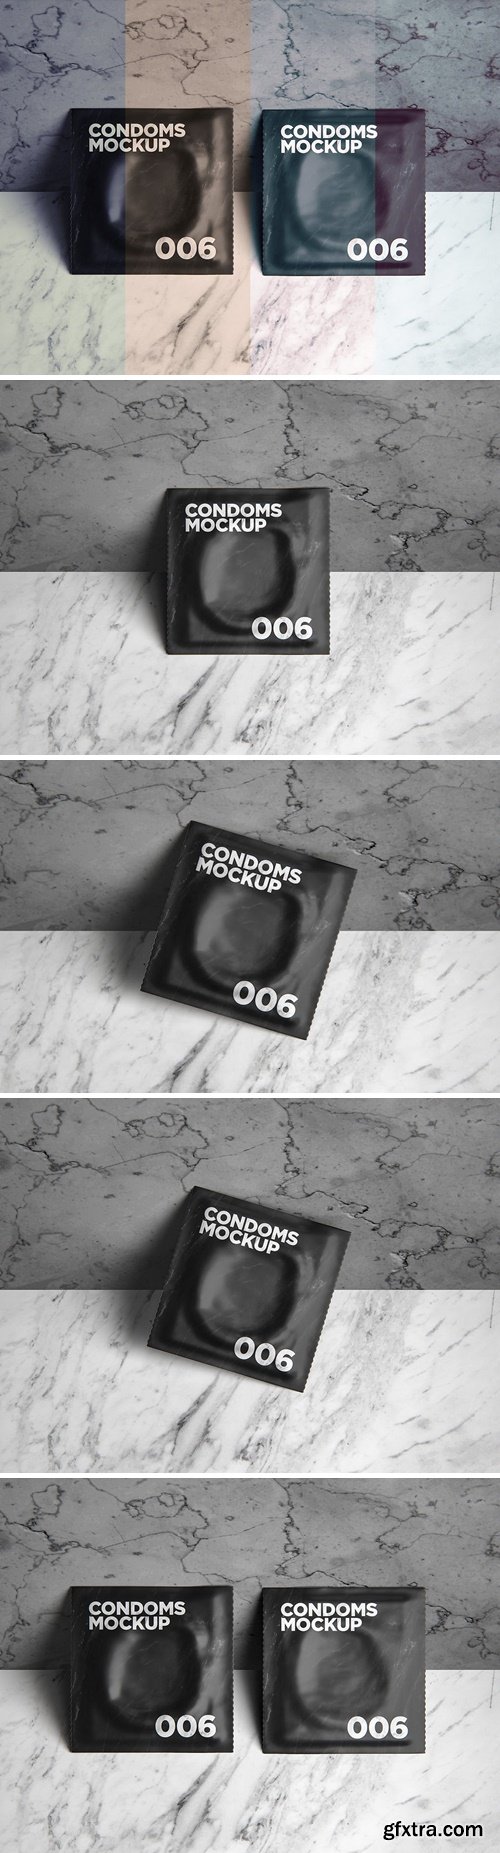 Condoms Mockup 006 QP6N7DU